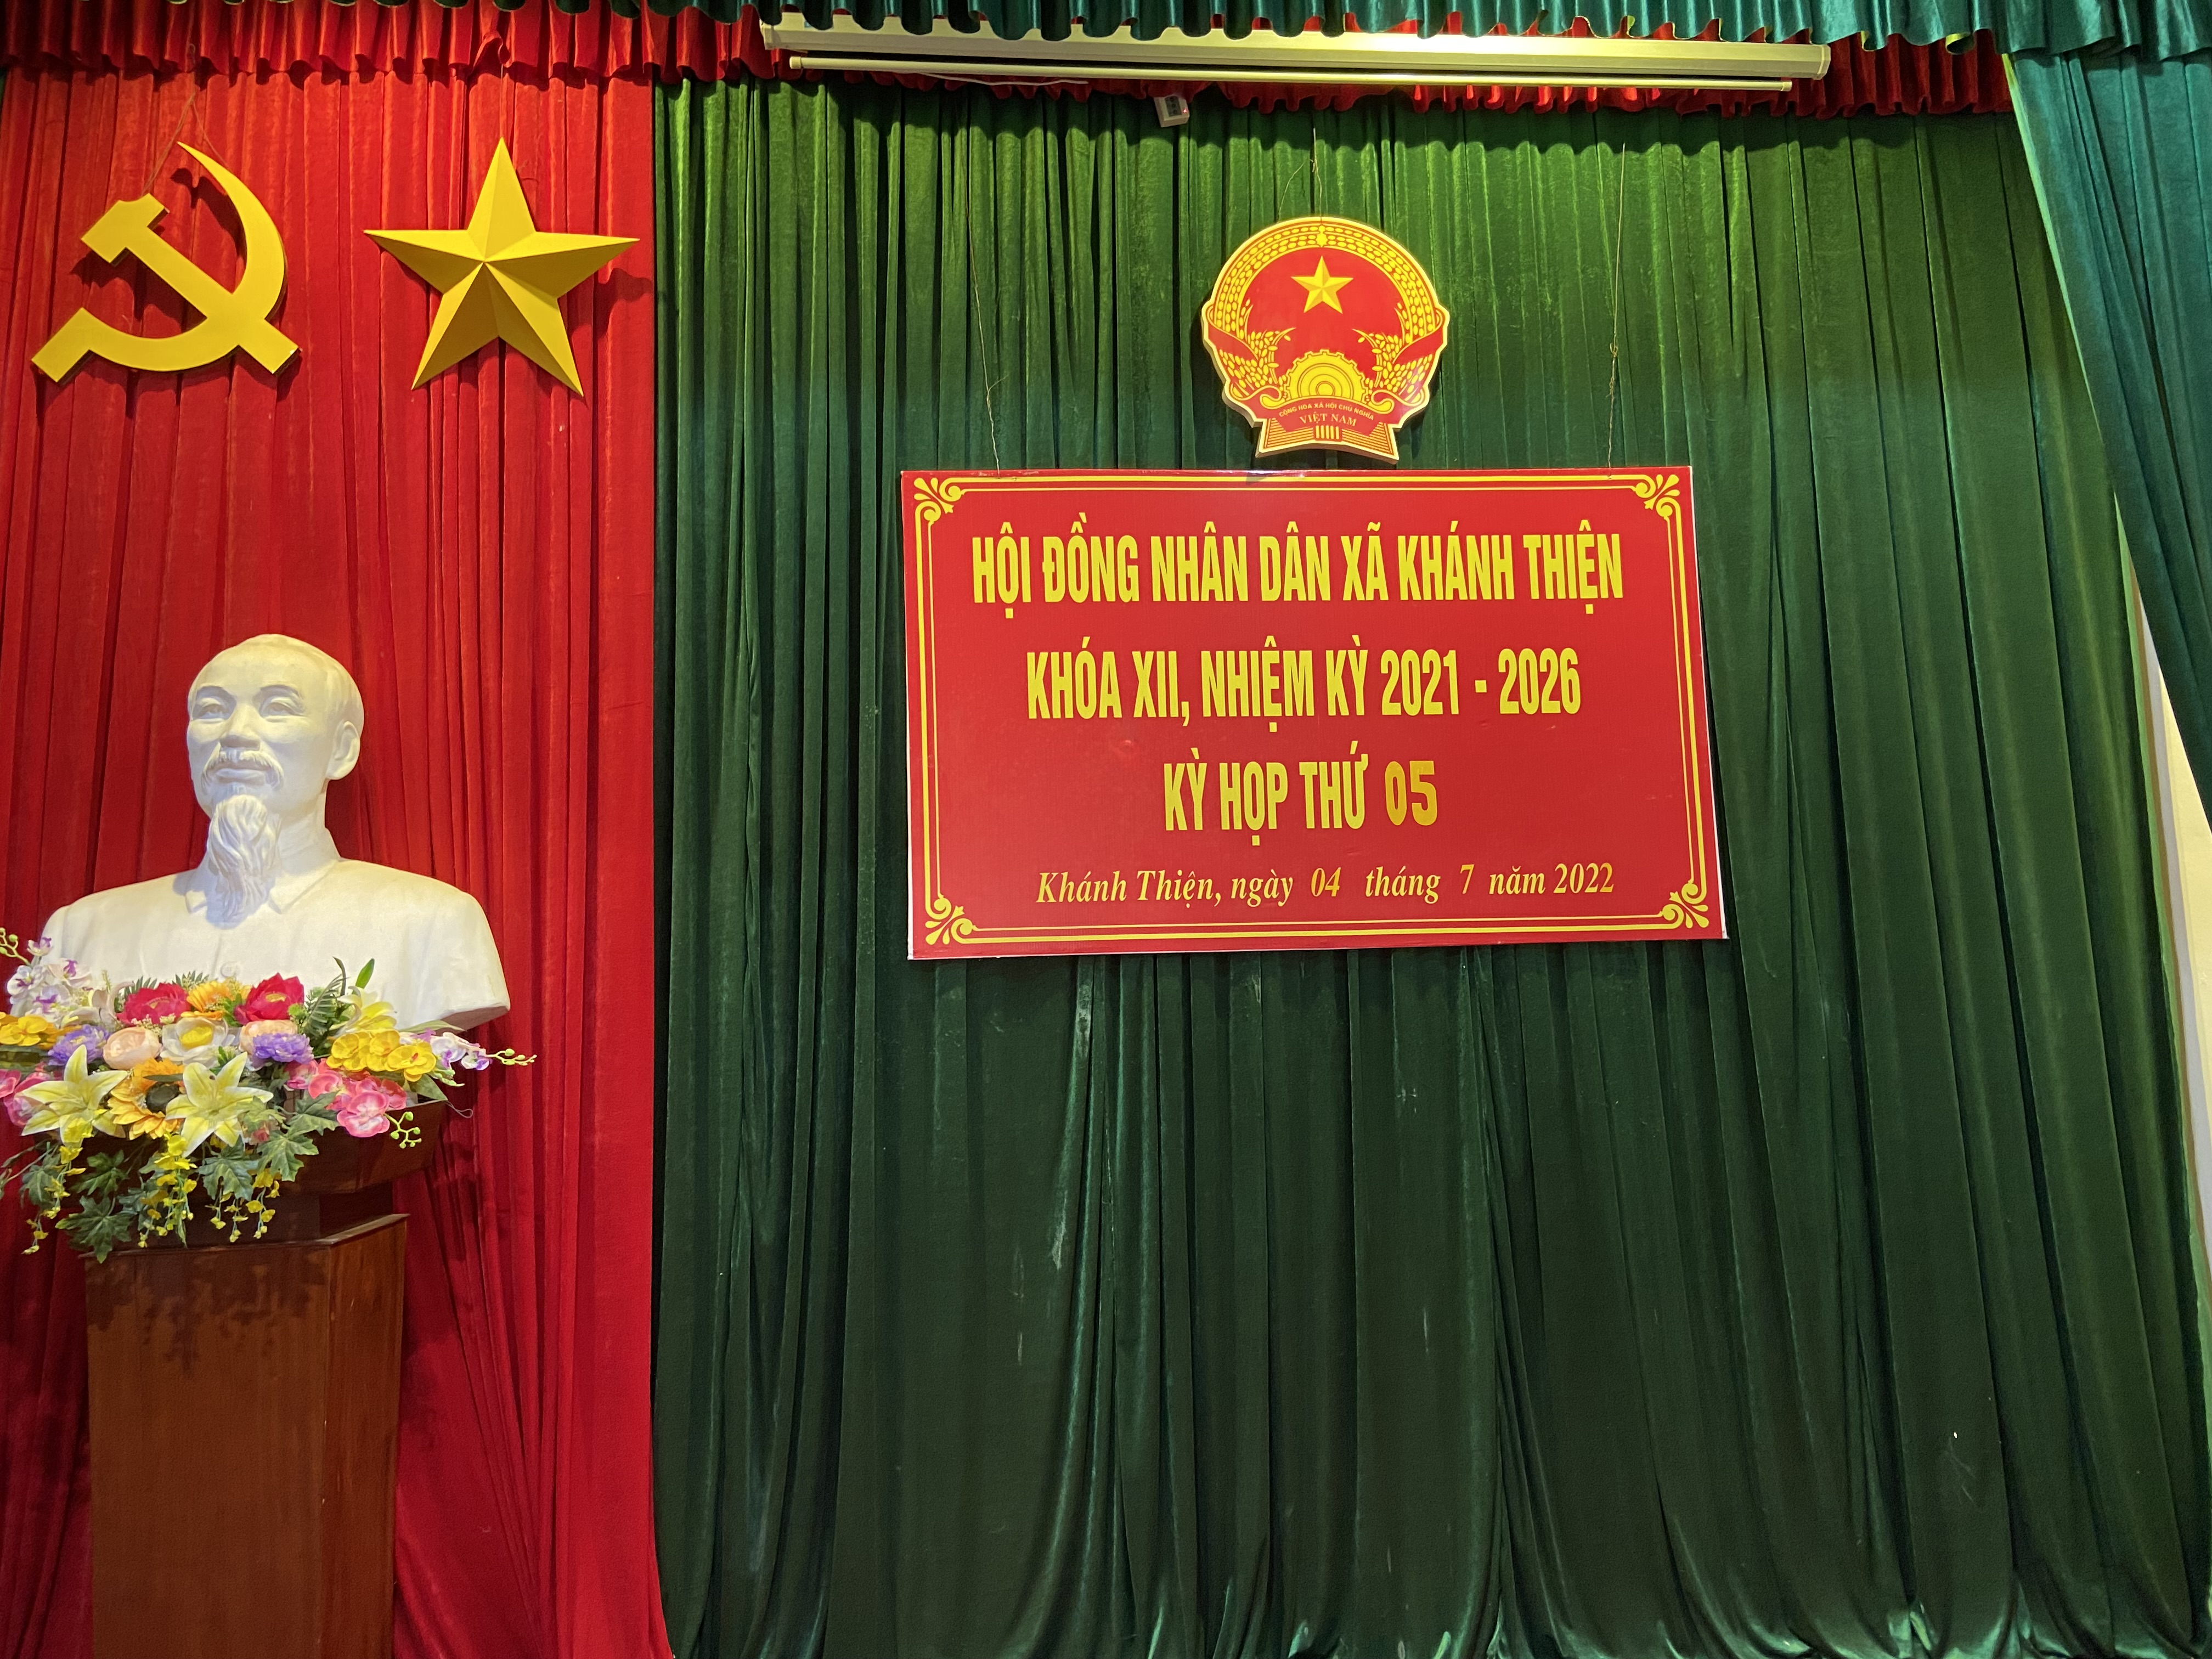 Kỳ họp thứ 5 - HĐND xã Khánh Thiện khóa XII, nhiệm kỳ 2021-2026